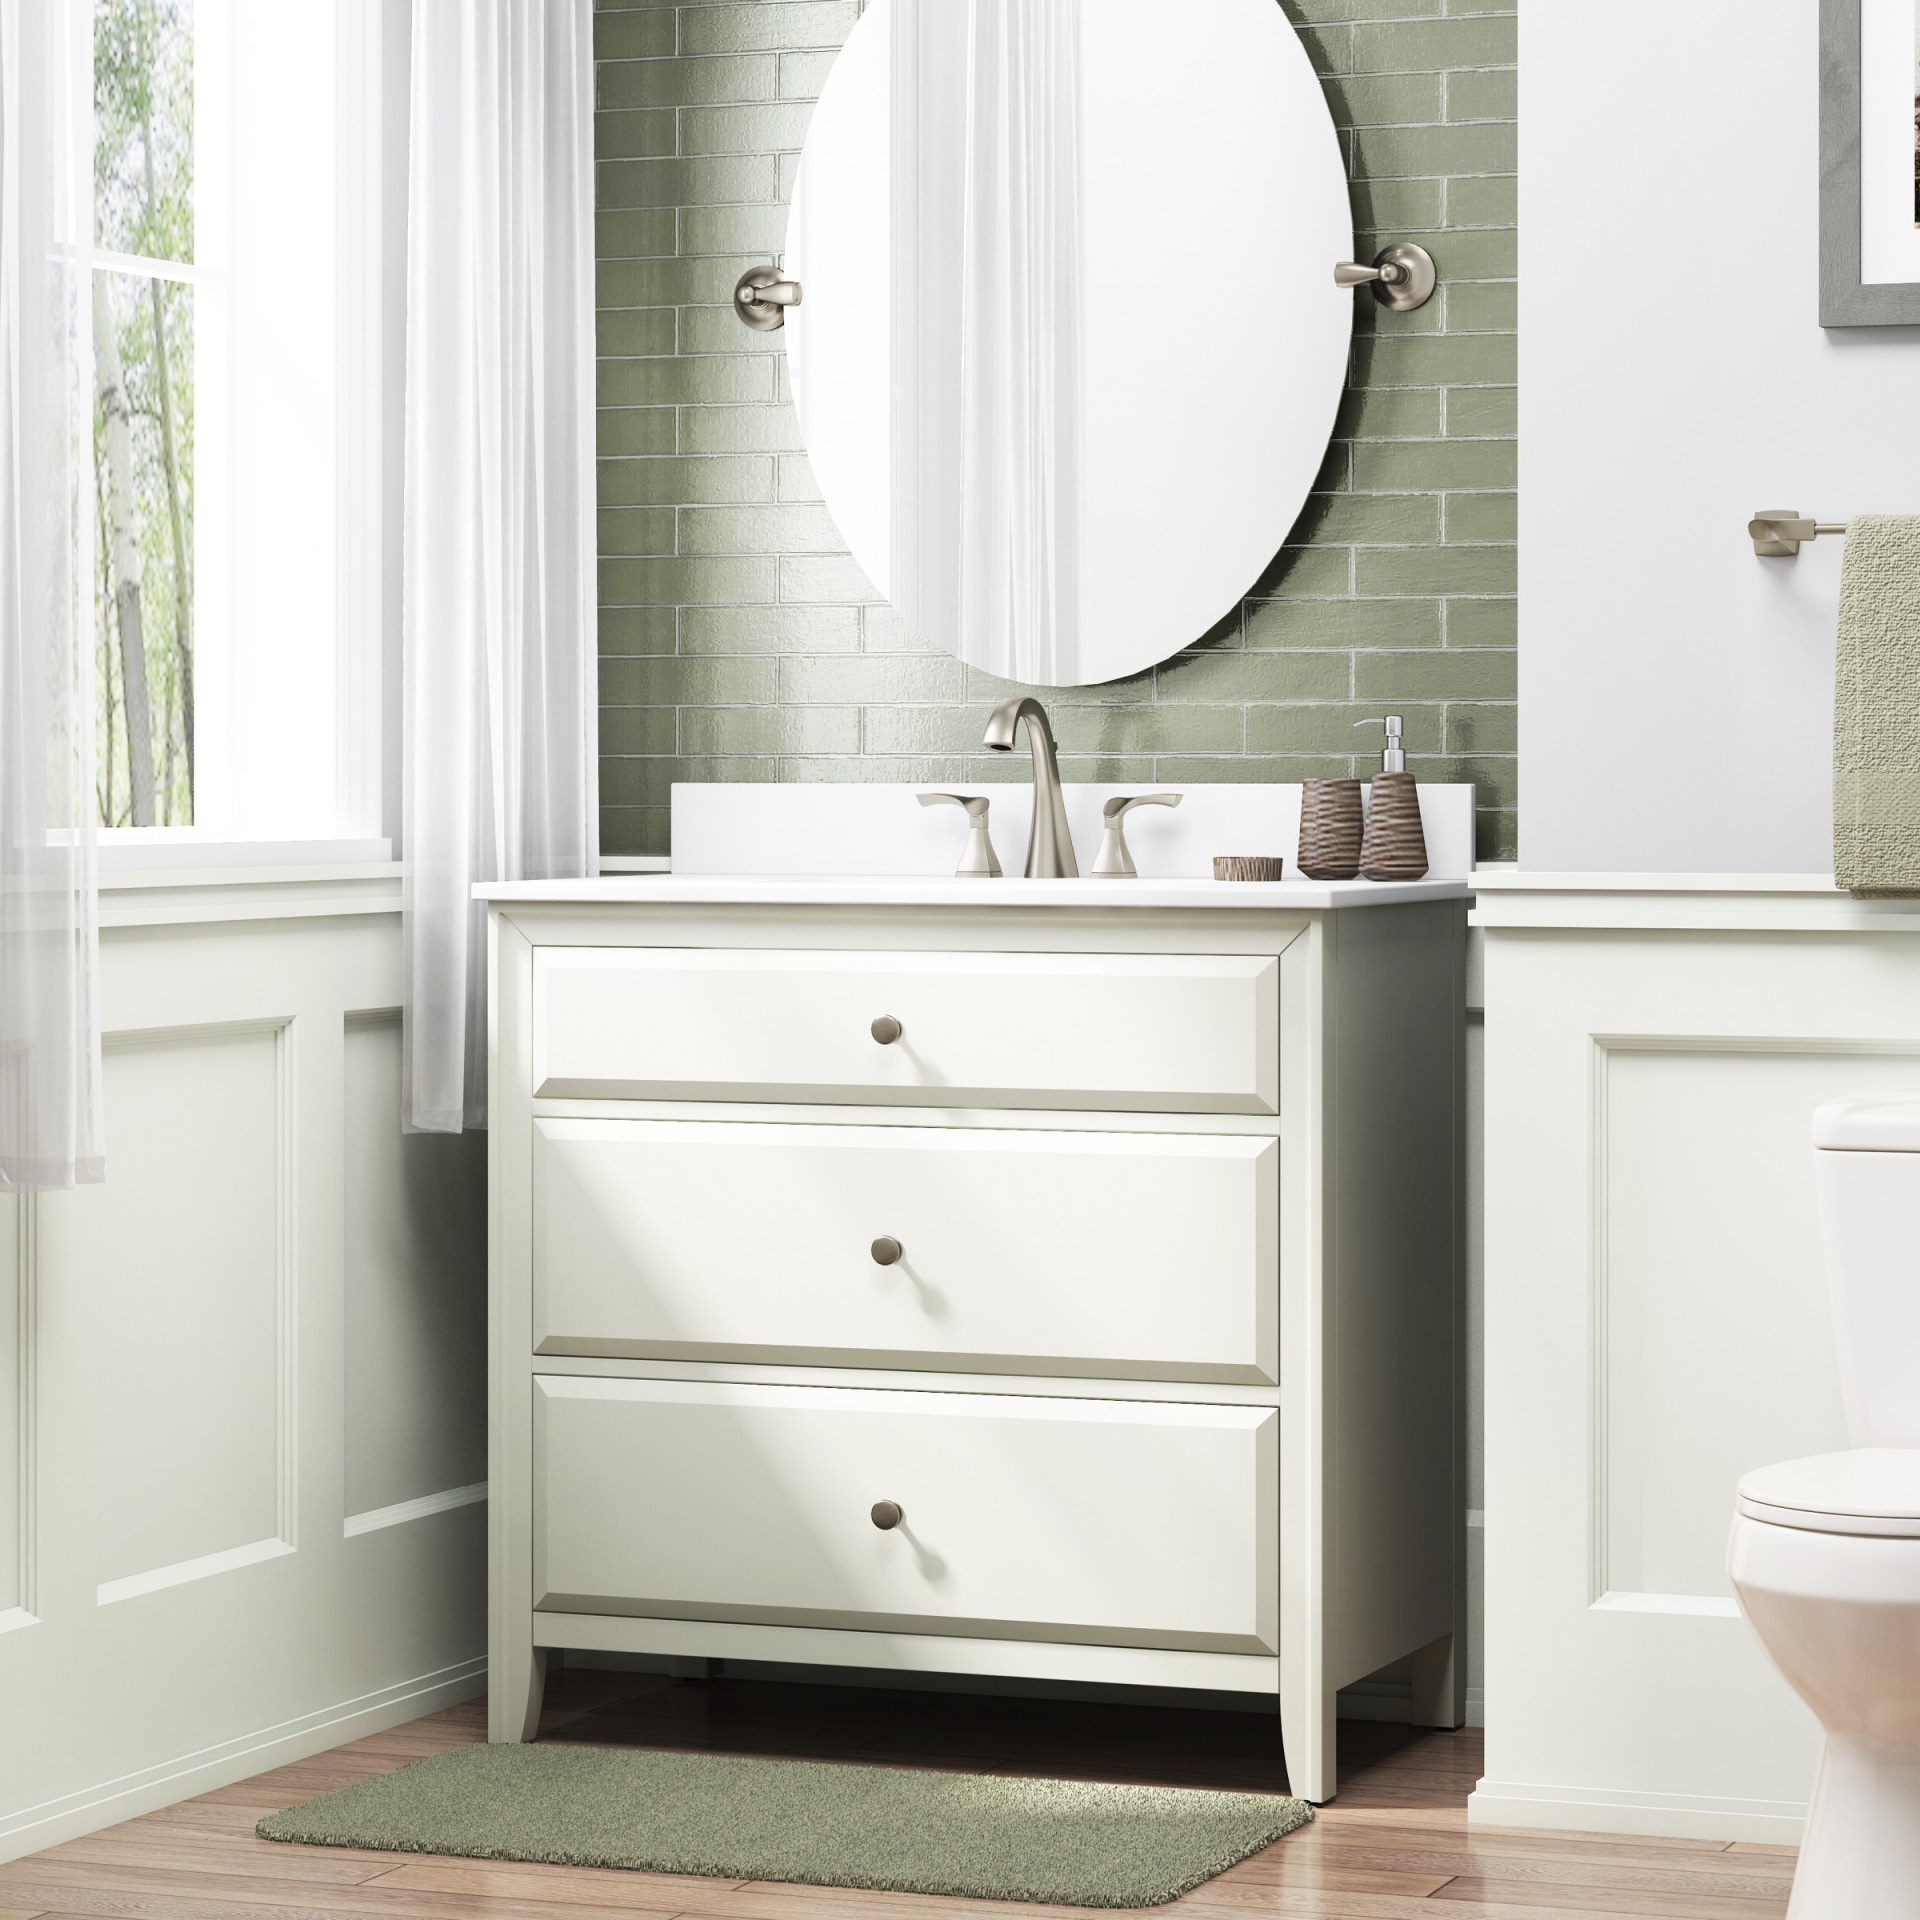 Undermount Single Sink Bathroom Vanity, Style Selections Vanity Top